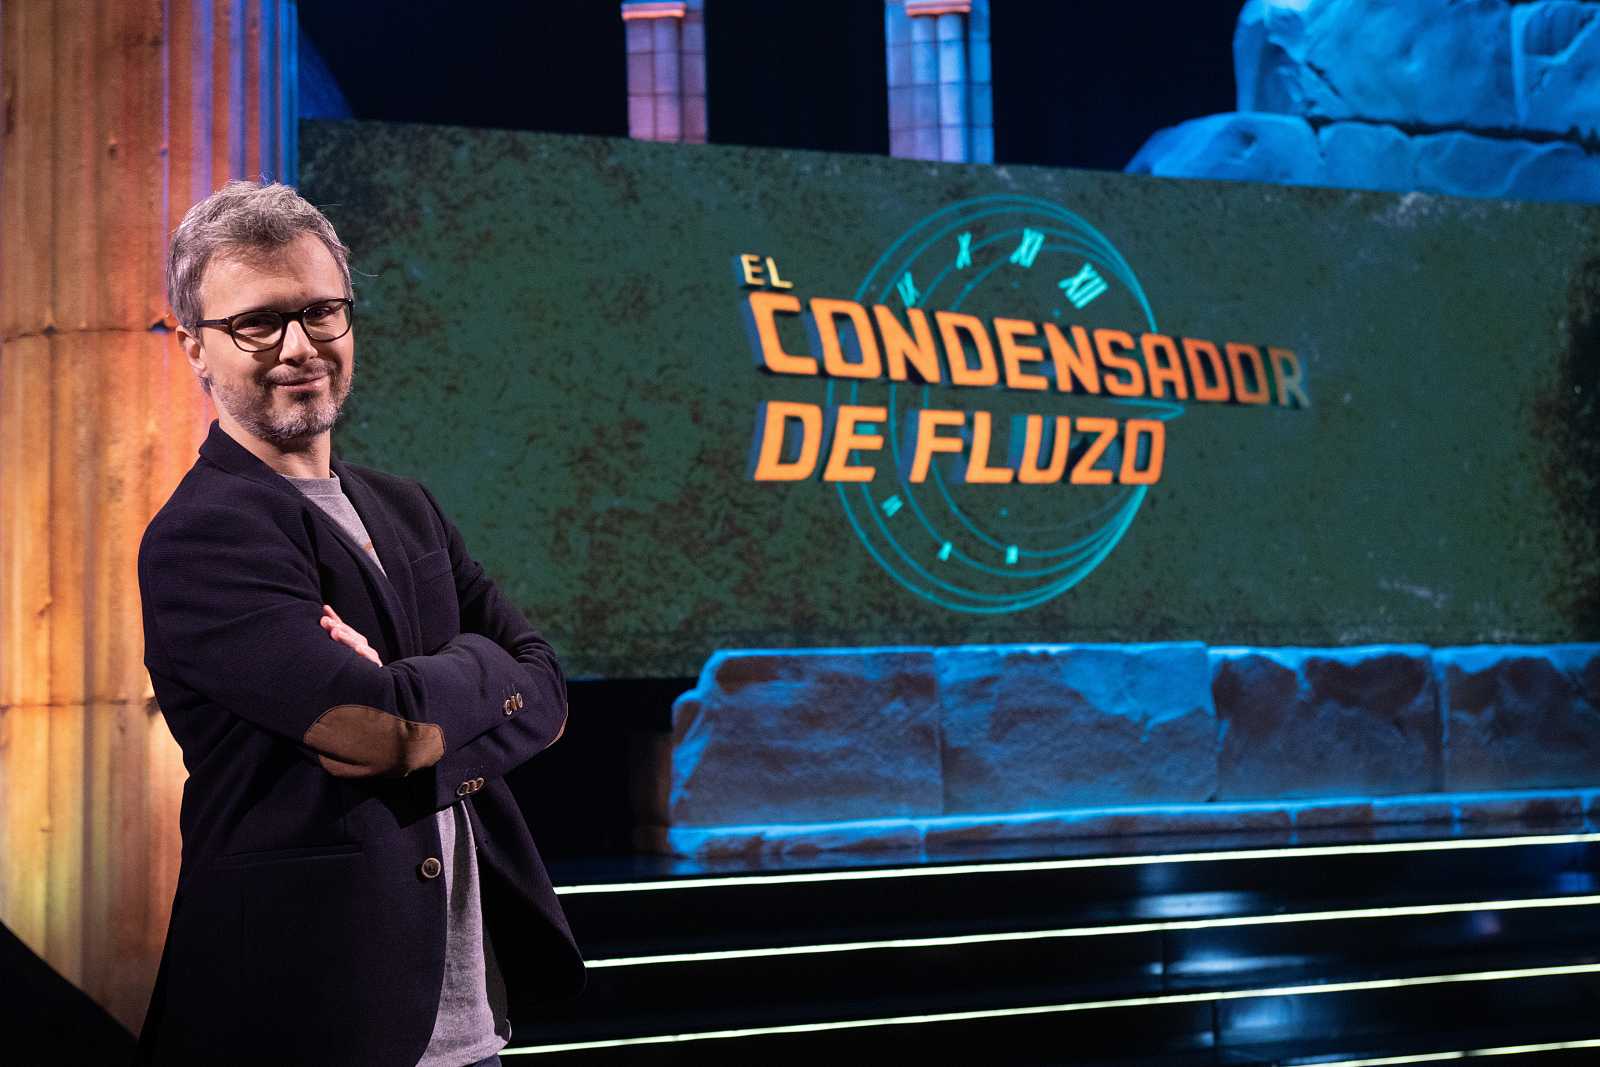 «El condensador de fluzo» de Juan Gómez-Jurado